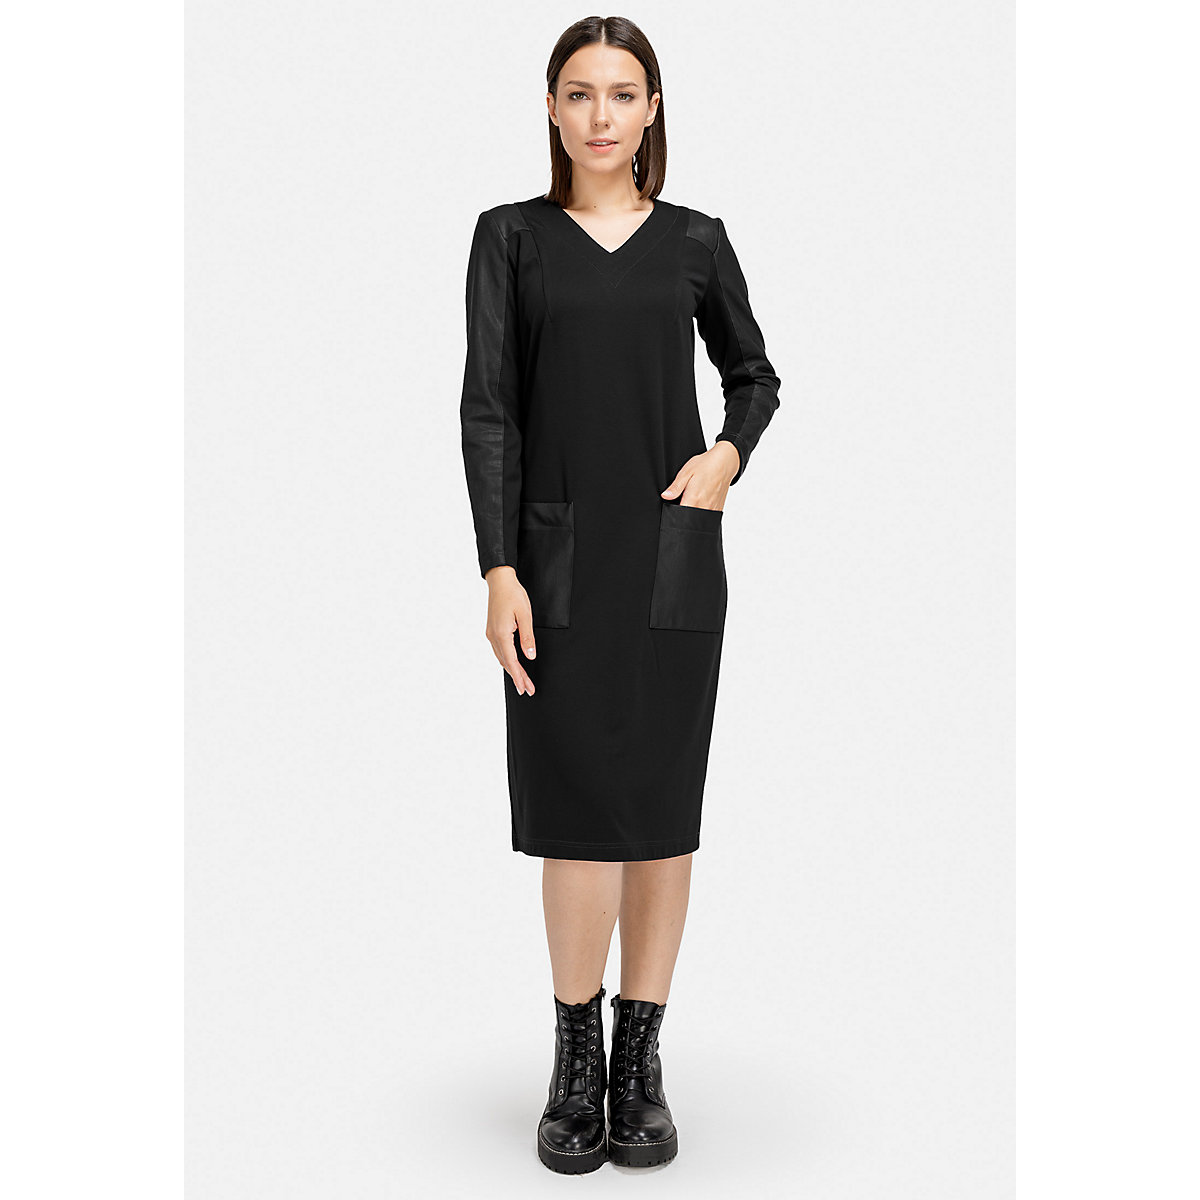 HELMIDGE A-Linien-Kleid Dress Kleider schwarz